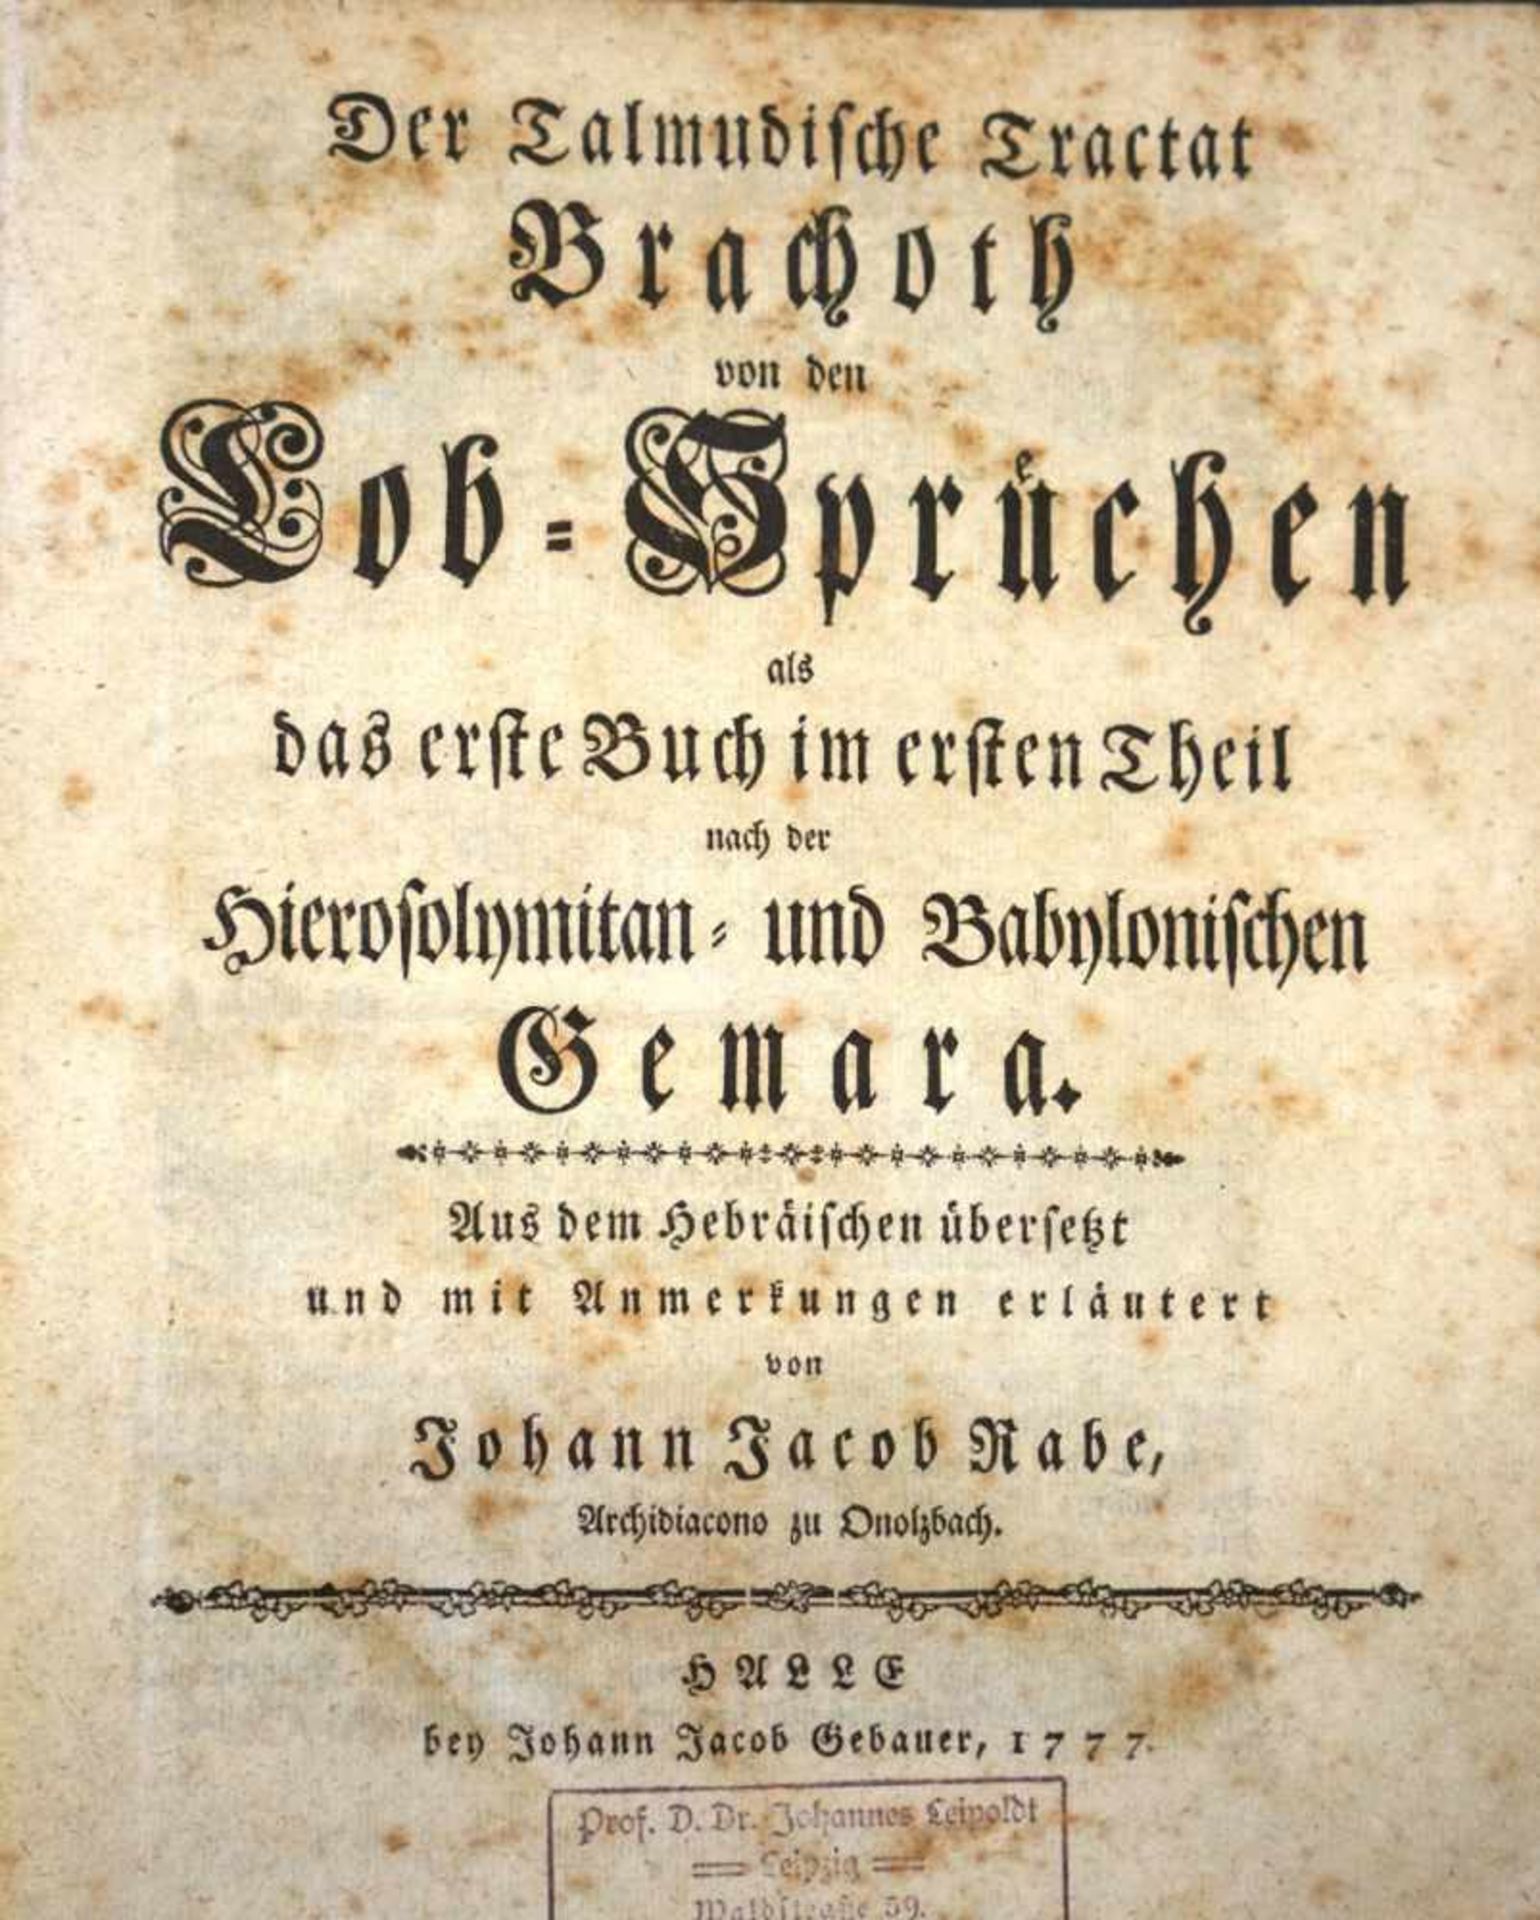 Rabe, Johann Jakob: Der Talmudische Tractat Brachoth